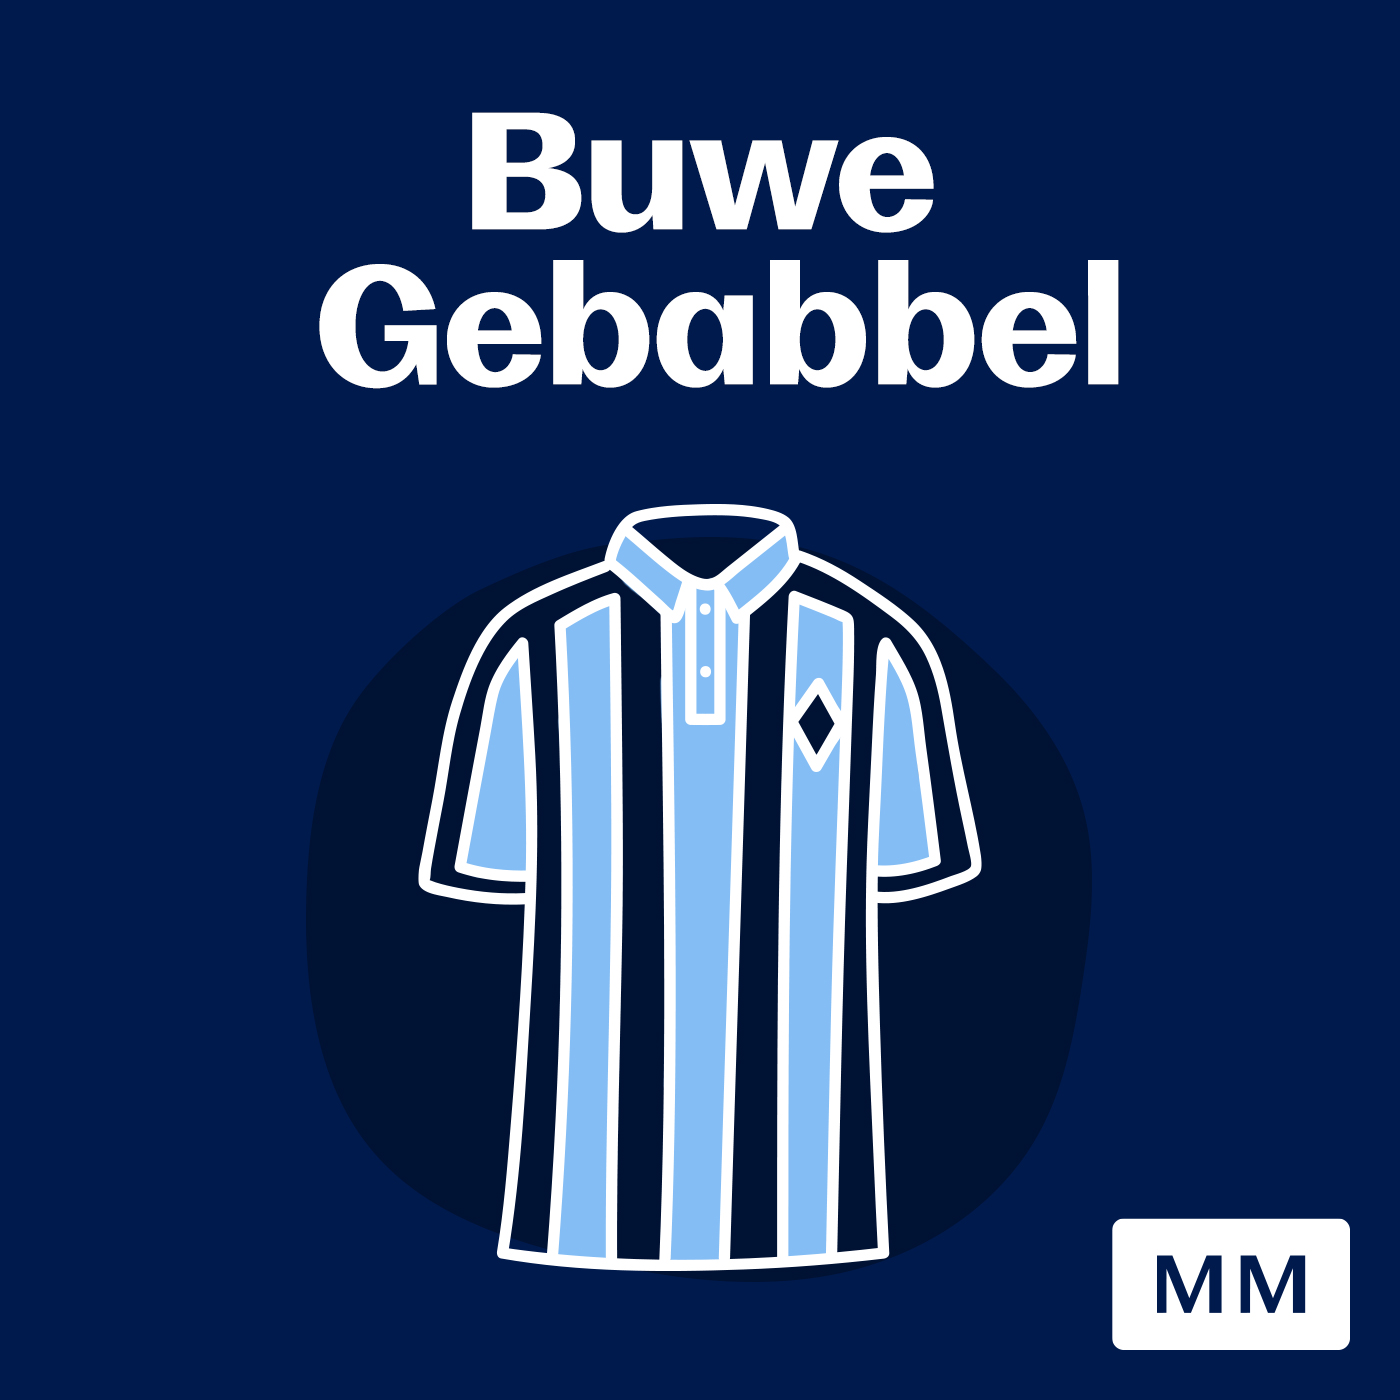 MM Podcast "Buwe Gebabbel"